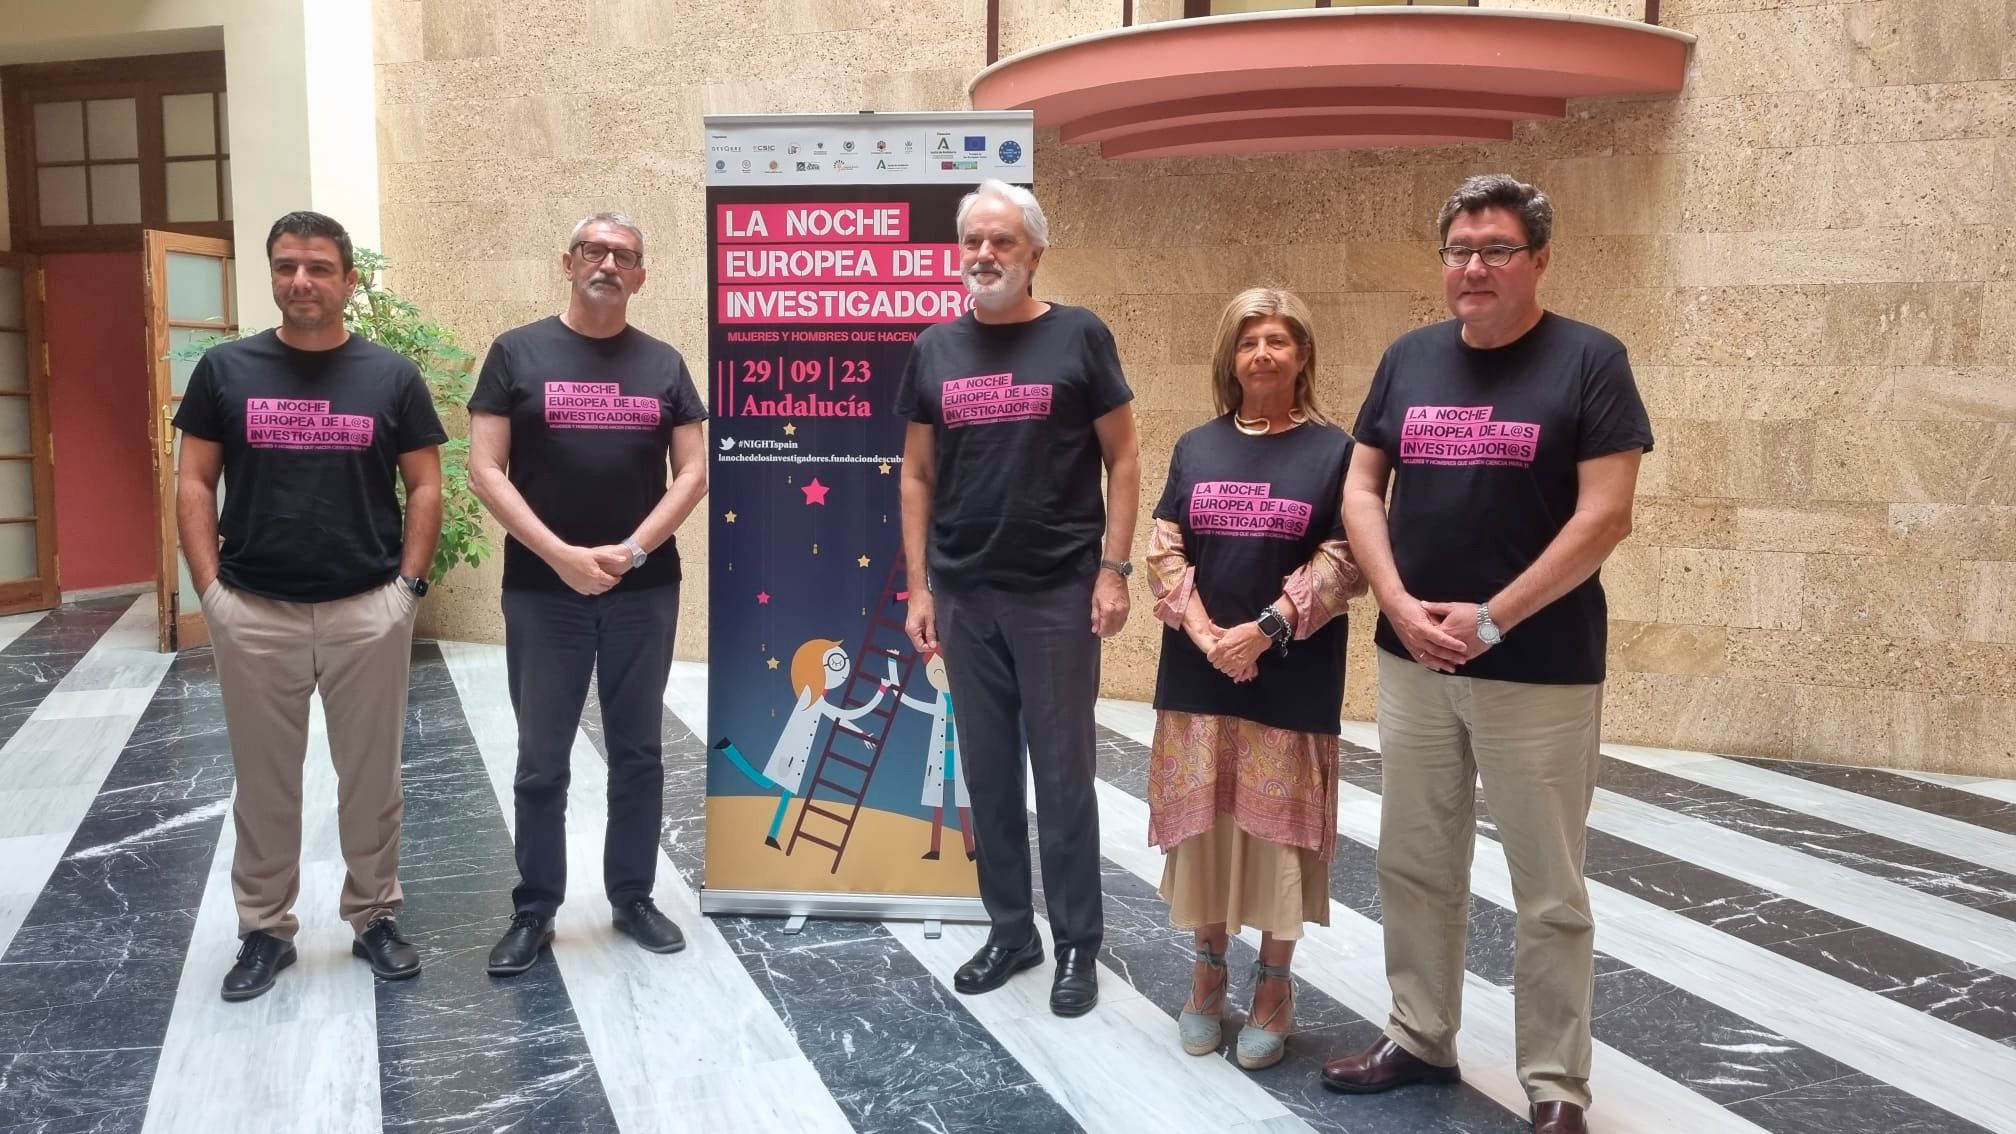 Presentación de la Noche Europea de los investigadores en Jerez.